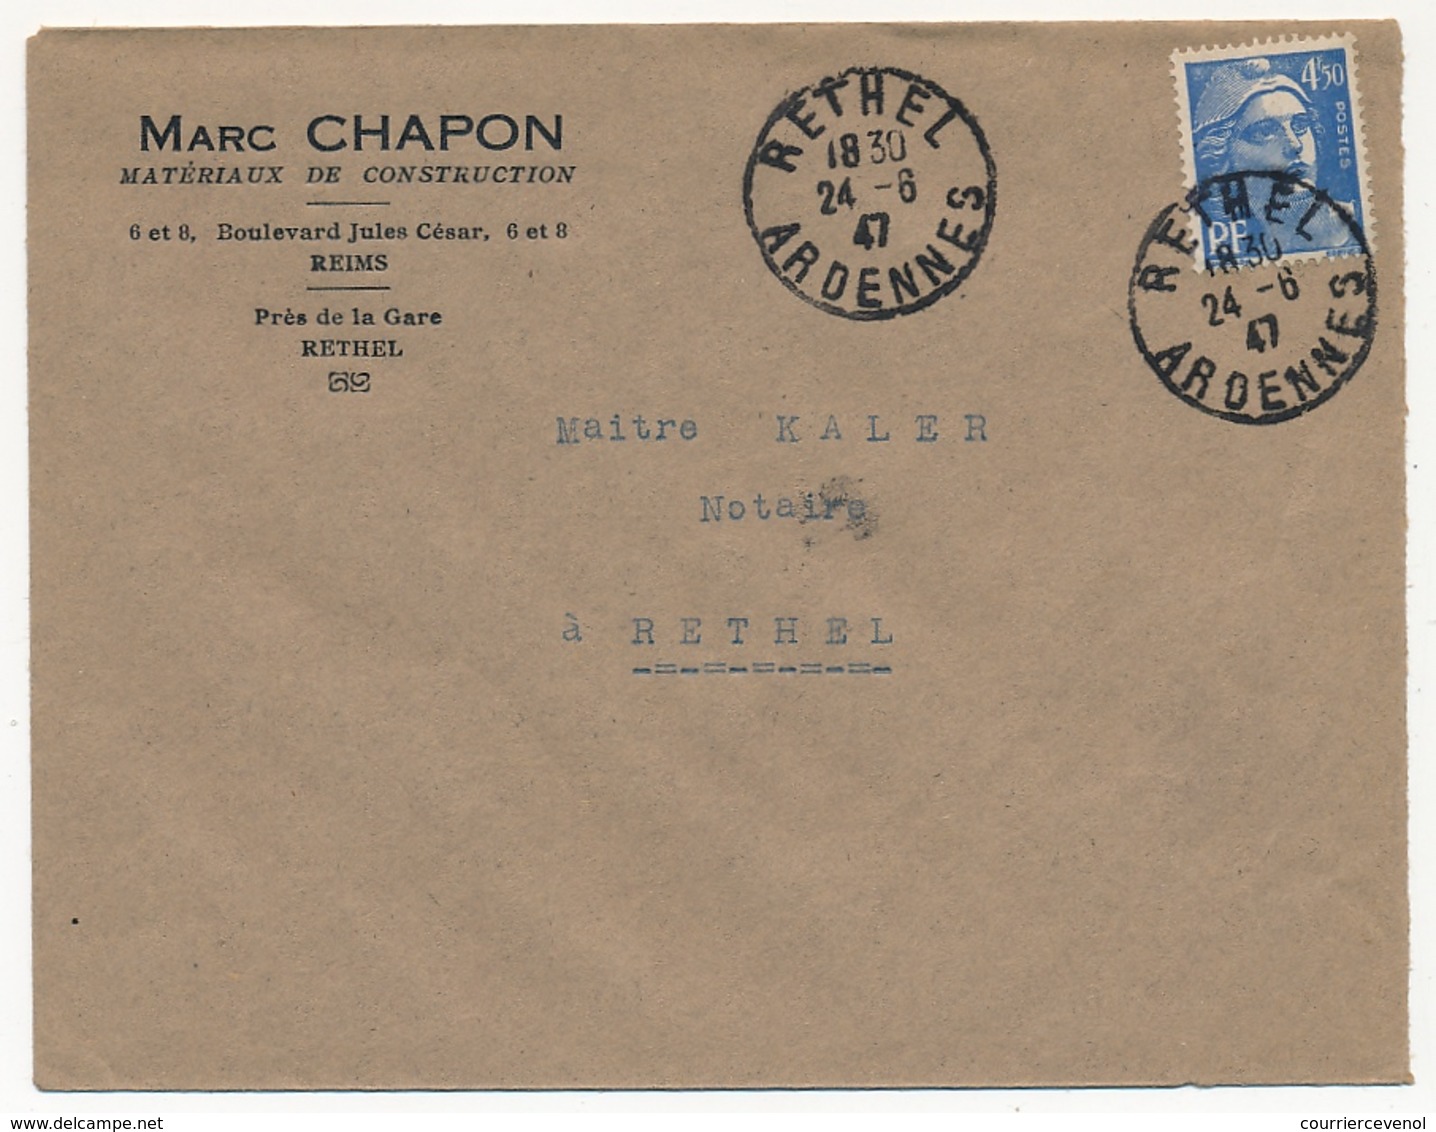 FRANCE - Env. Affr 4,50 F Gandon Seul S/l RETHEL (Ardennes) 1947 - En Tête Marc Chapon Matériaux Construction - 1945-54 Marianne Of Gandon